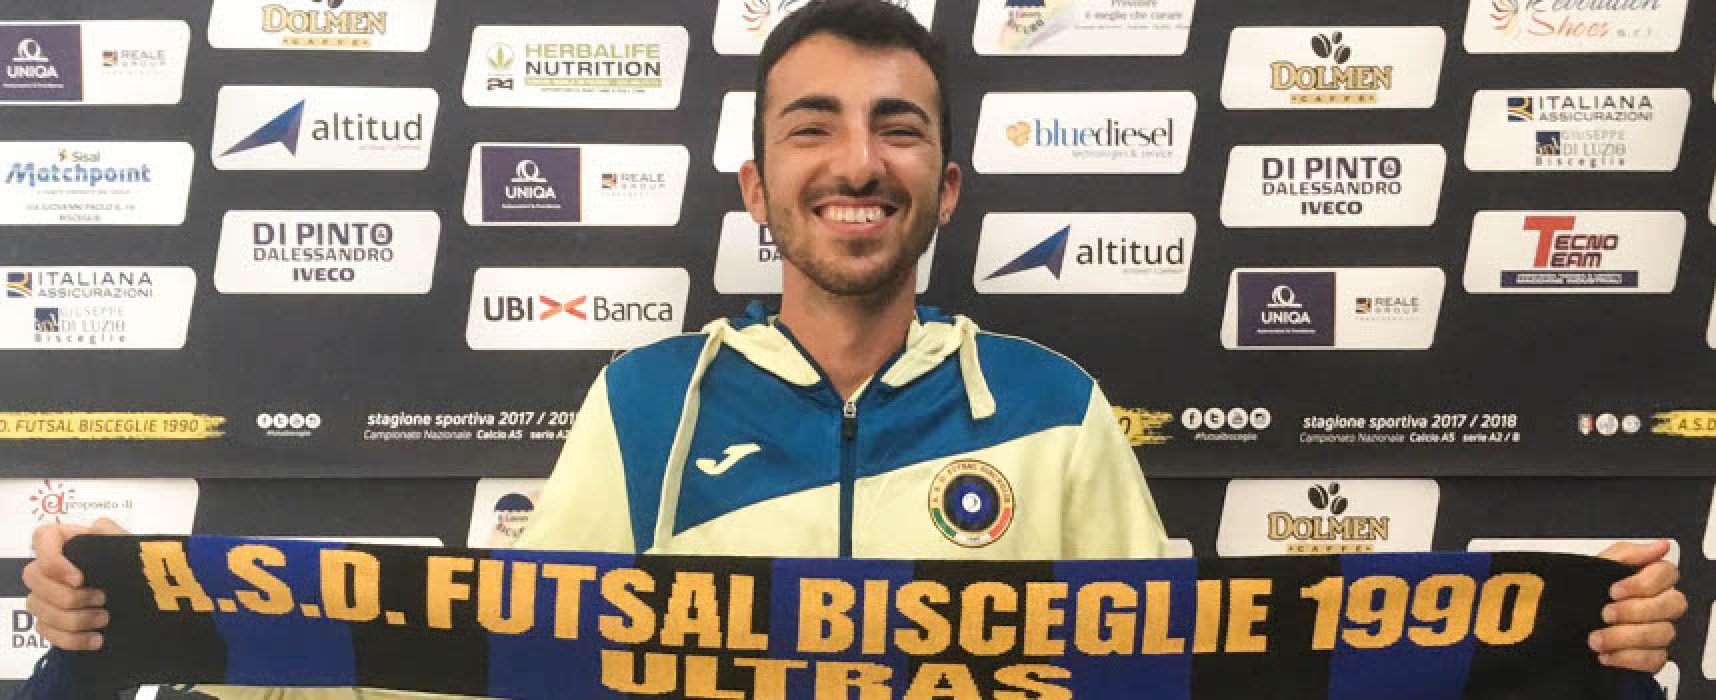 Futsal Bisceglie, Danilo Pappalettera entra nello staff tecnico dell’Under 19